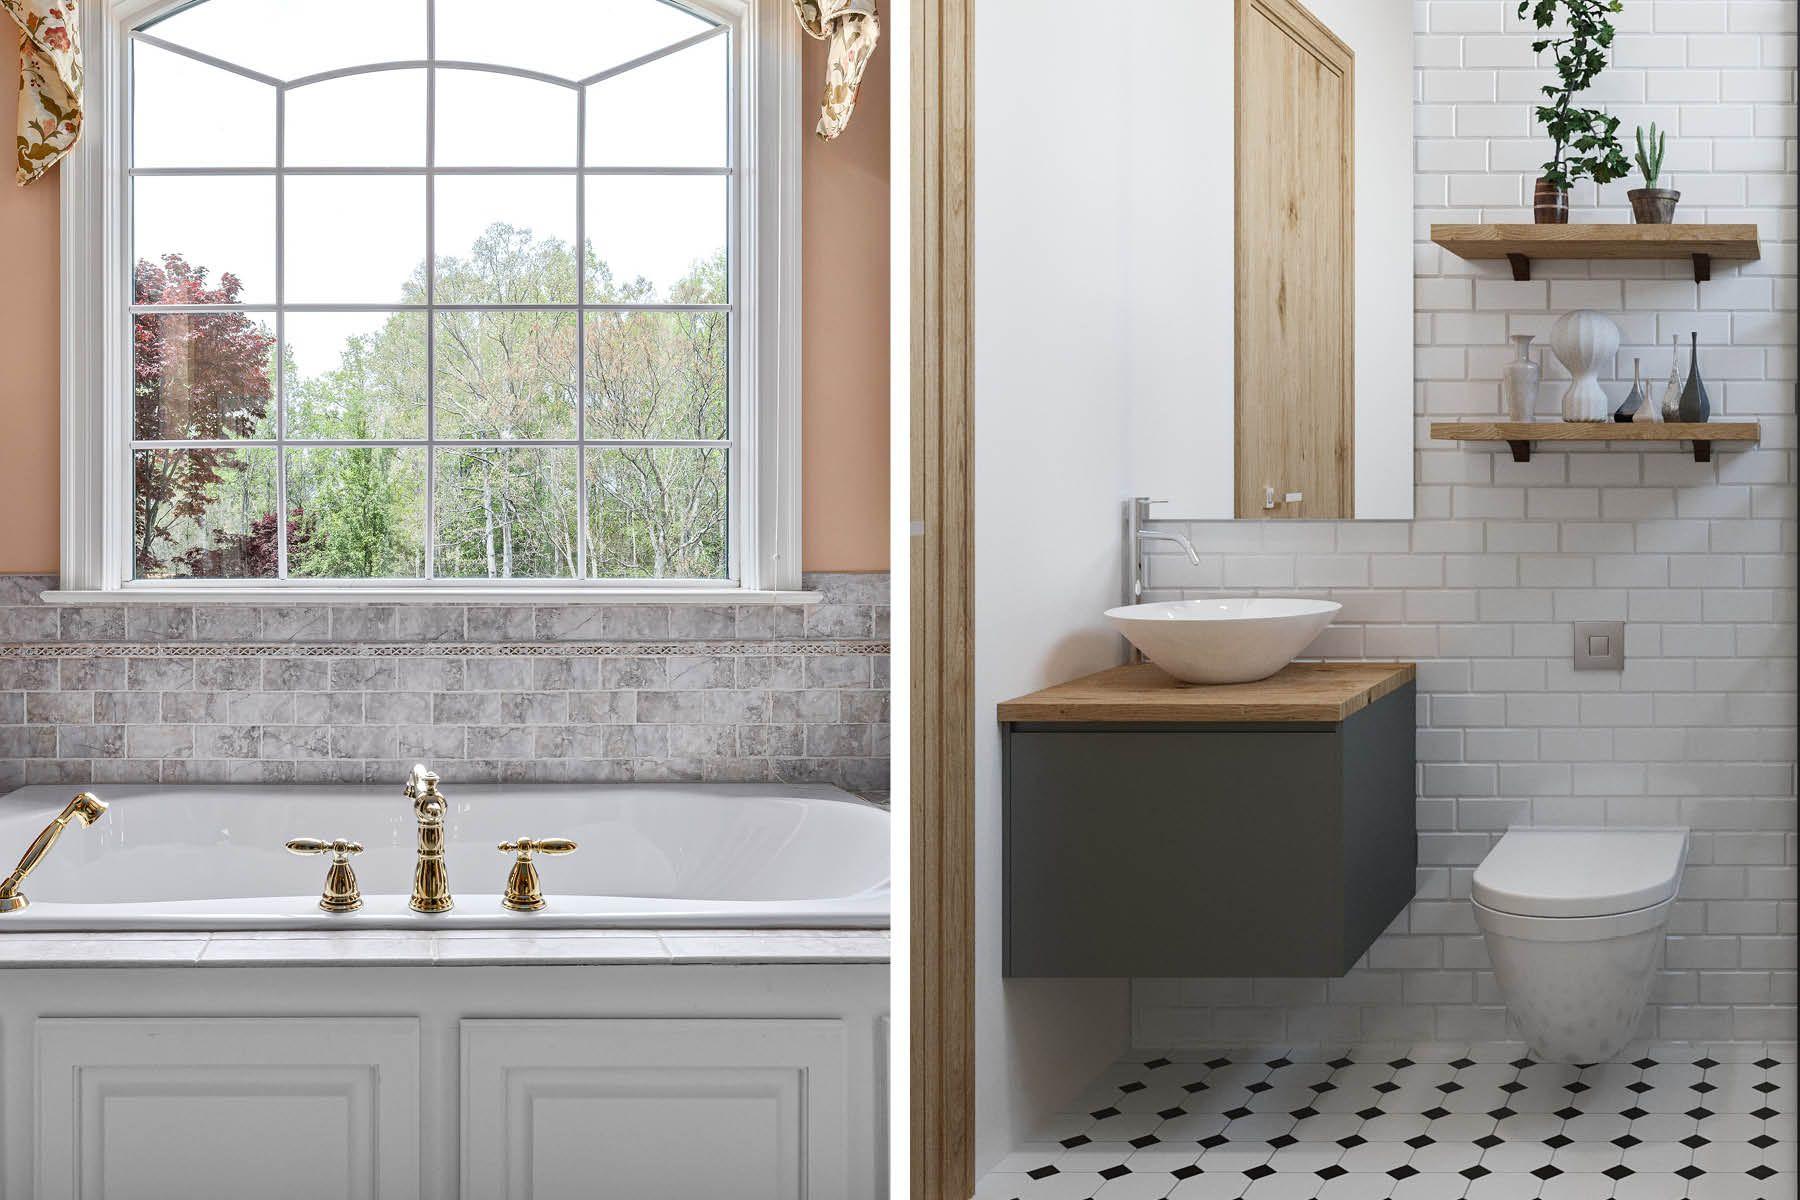 Två vackra badrum, ett med badkaret placerat nedanför ett stort fönster med spröjs, ett med vackert golv i gammal stil, handfat och toa.